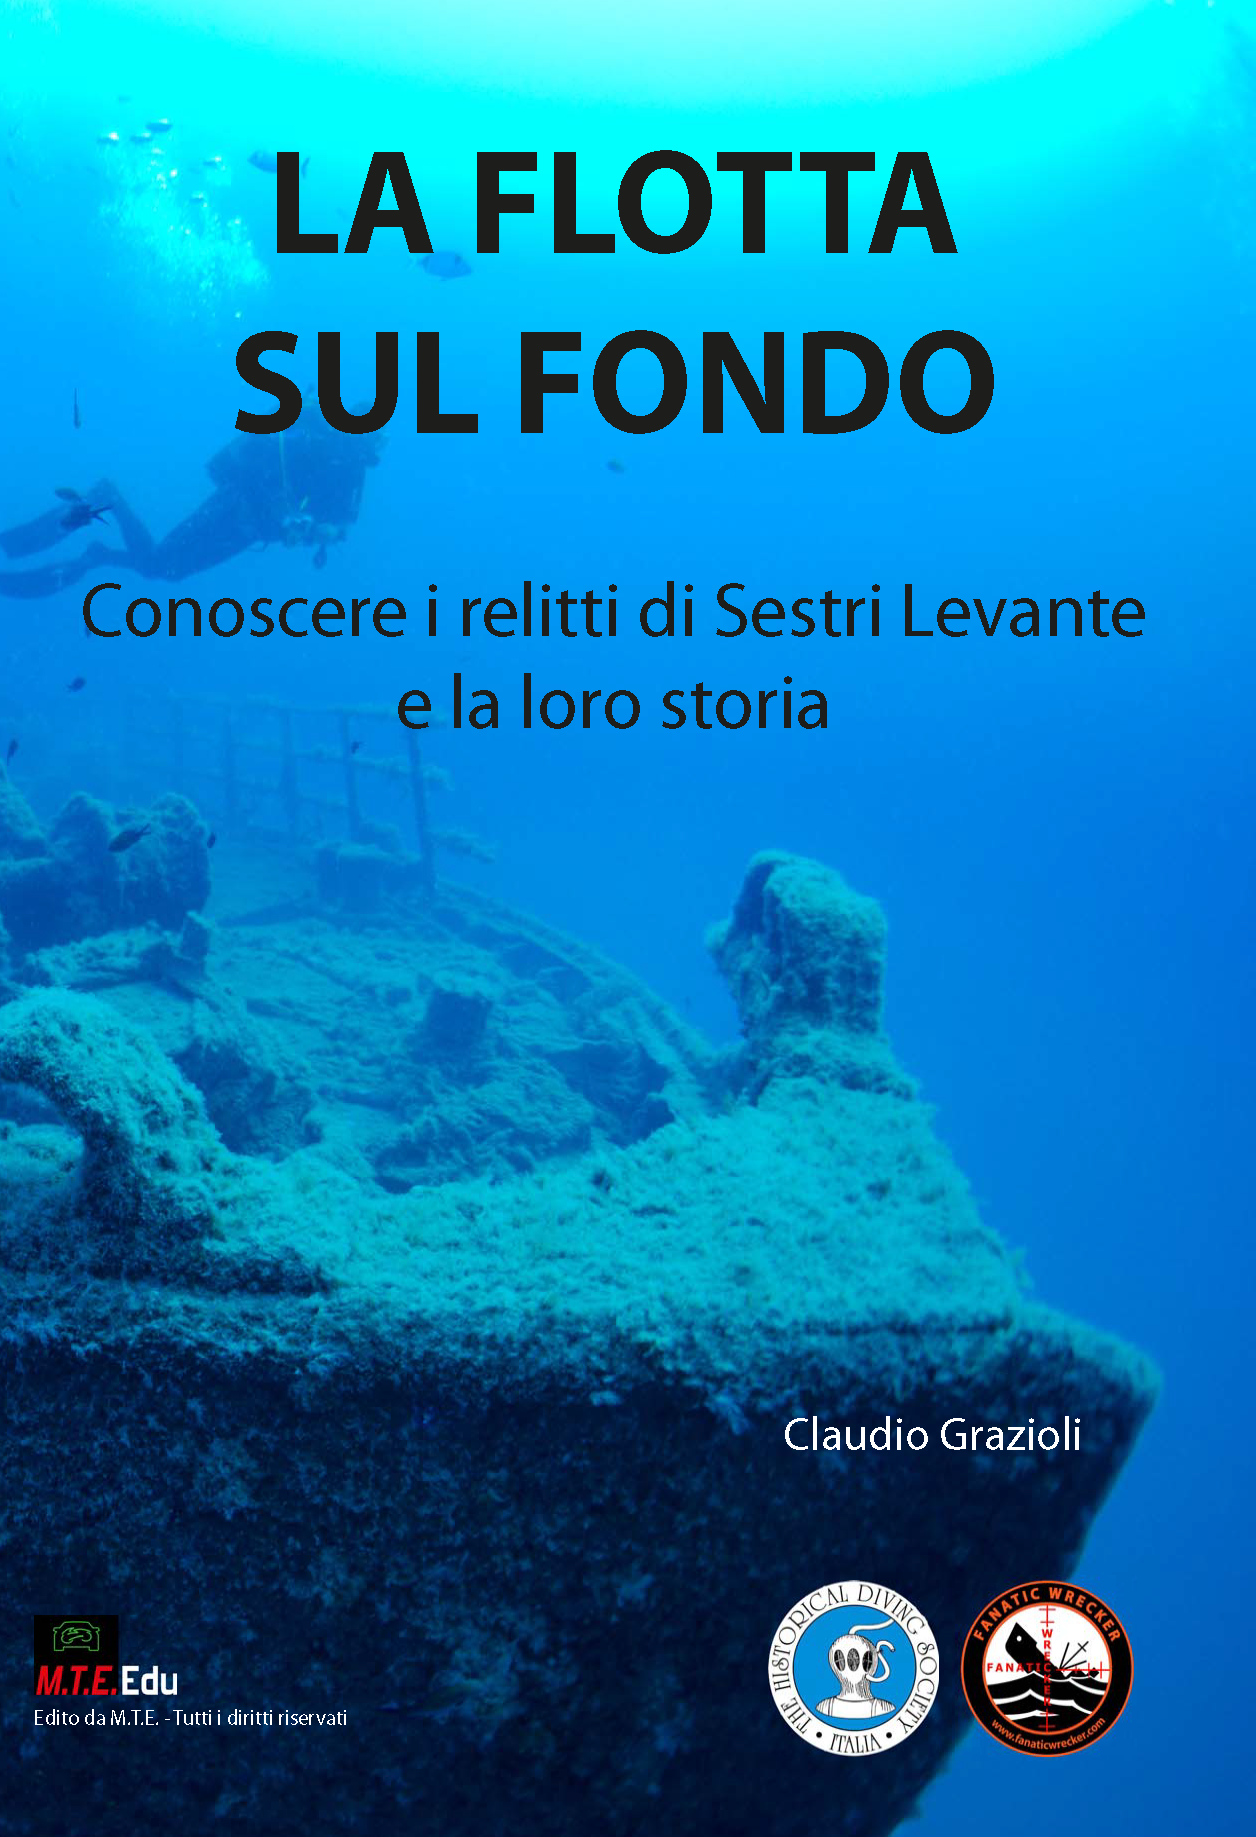 La flotta sul fondo - Conoscere i relitti di Sestri Levante e la loro storia - Claudio Grazioli